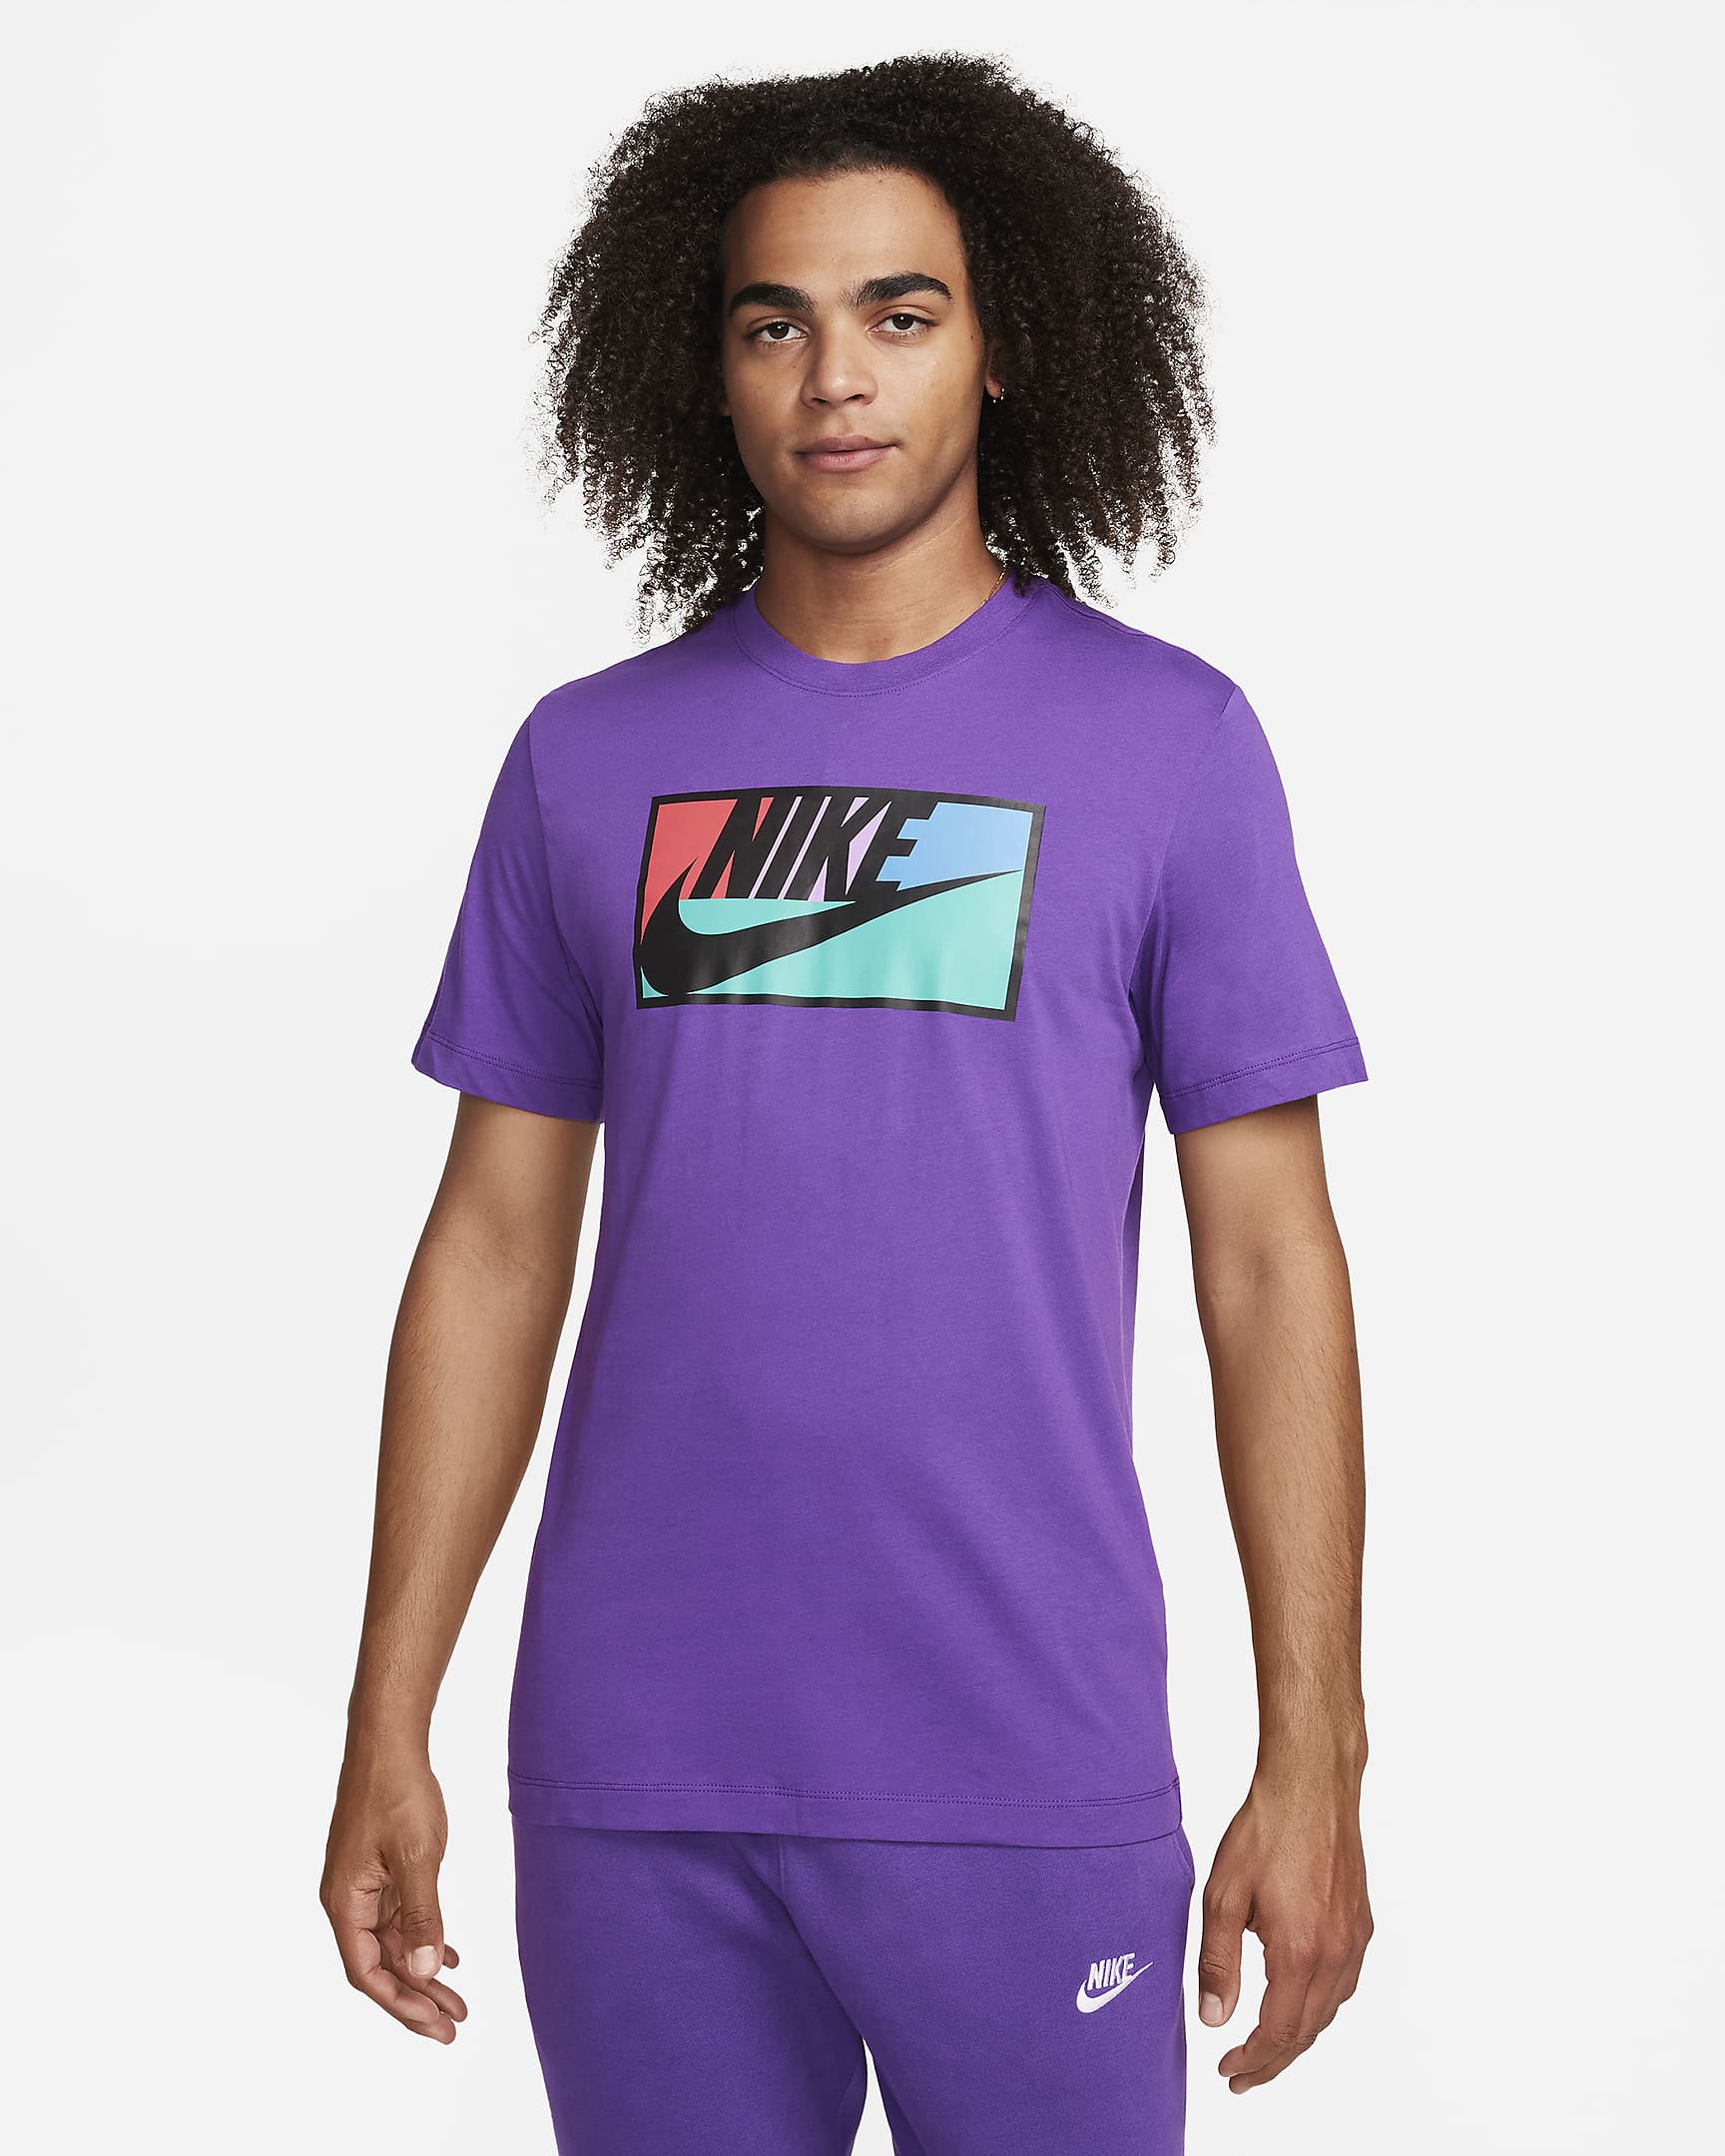 Nike Sportswear Men's T-Shirt - Purple Cosmos